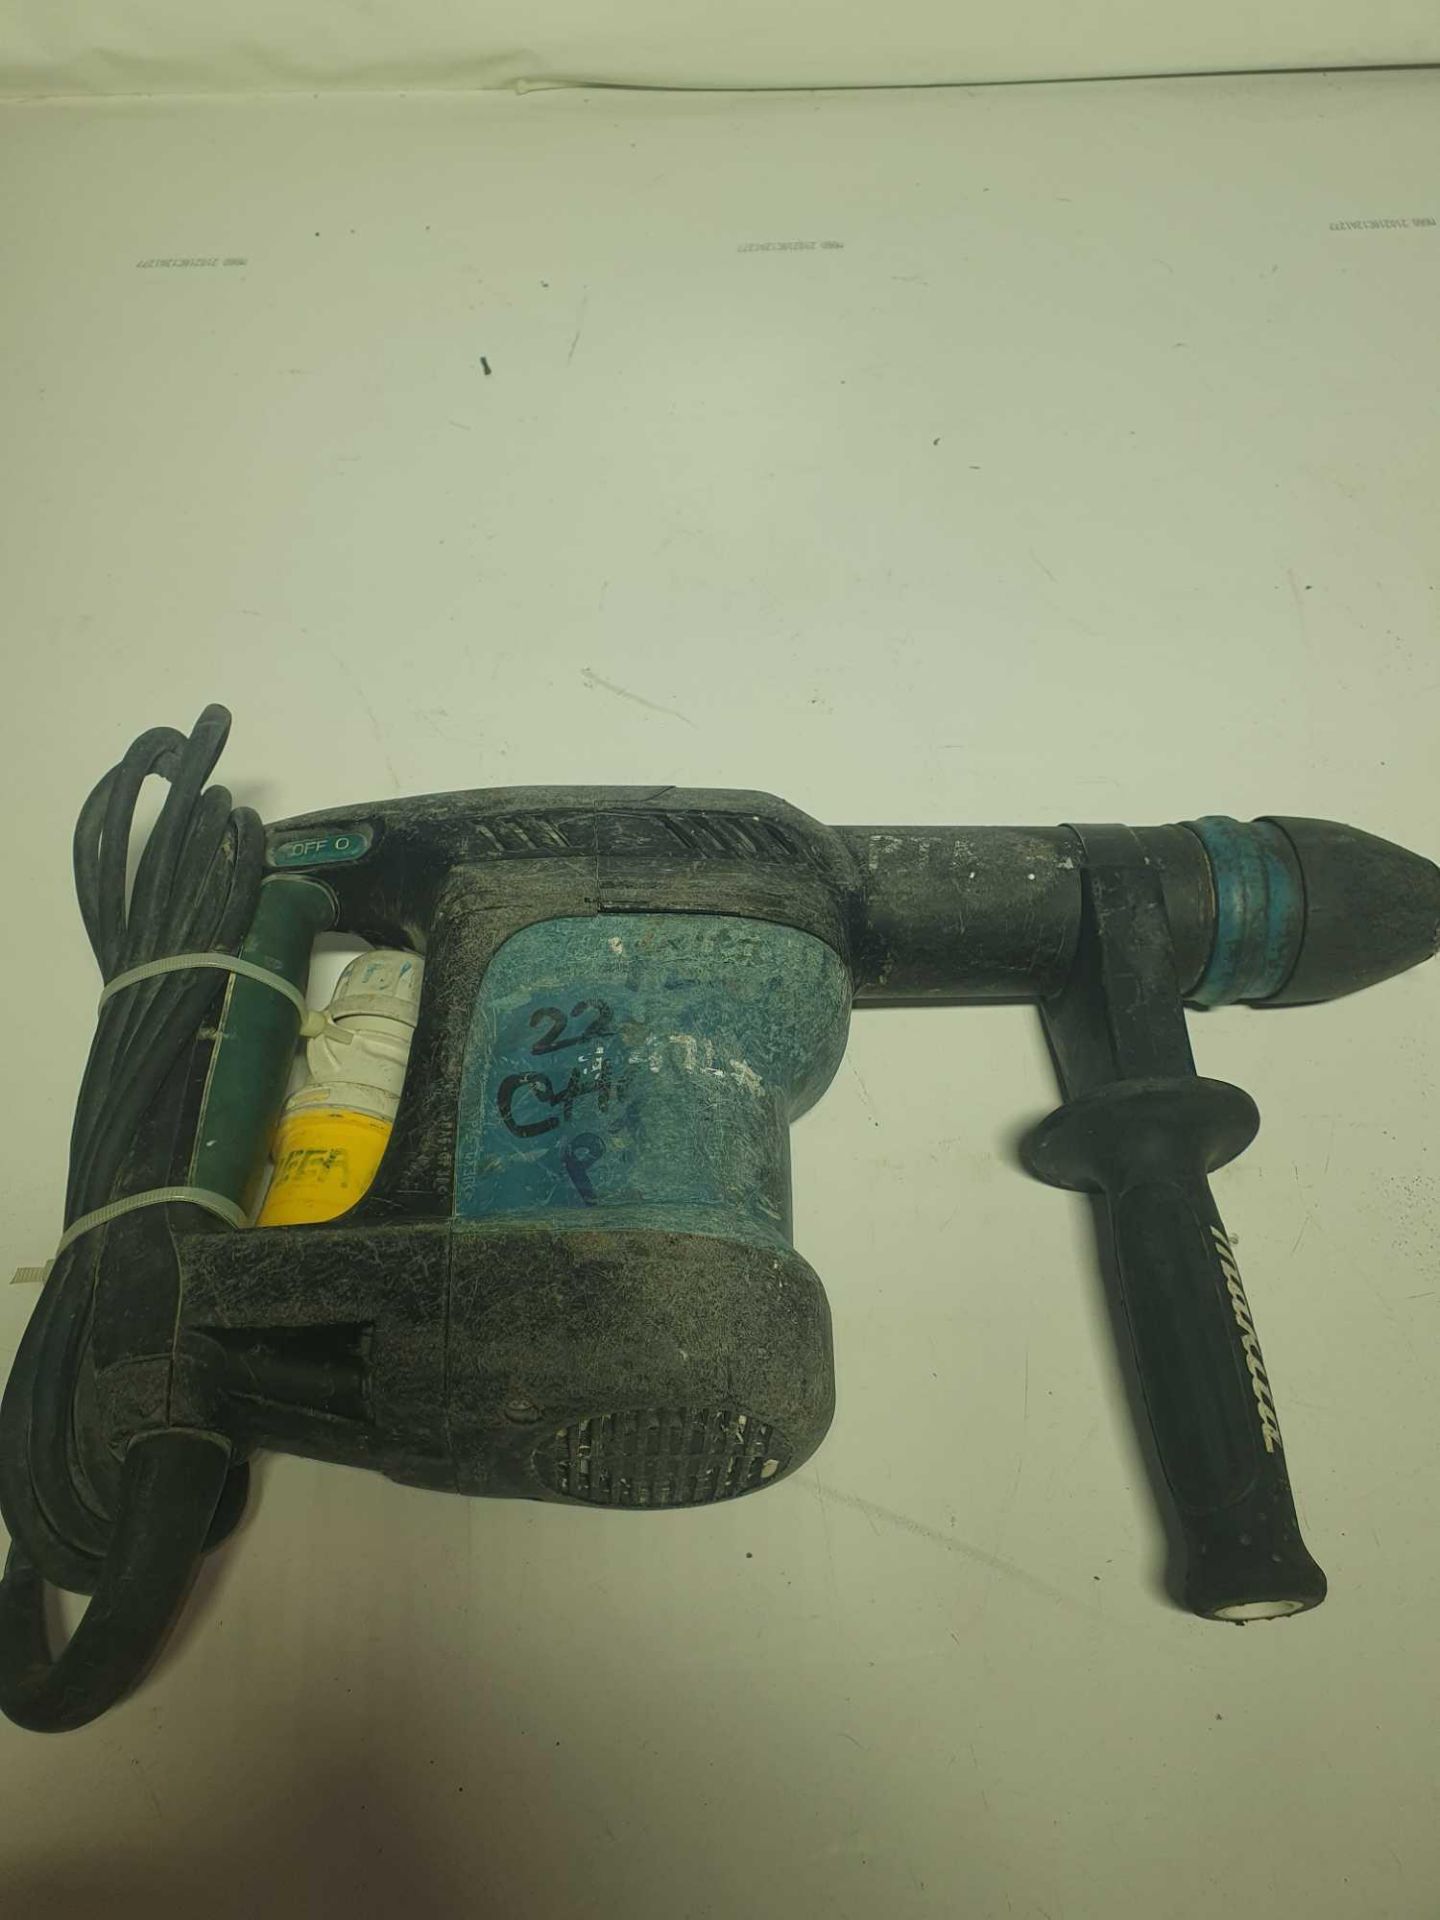 Makita 110v hammer drill - Image 3 of 3